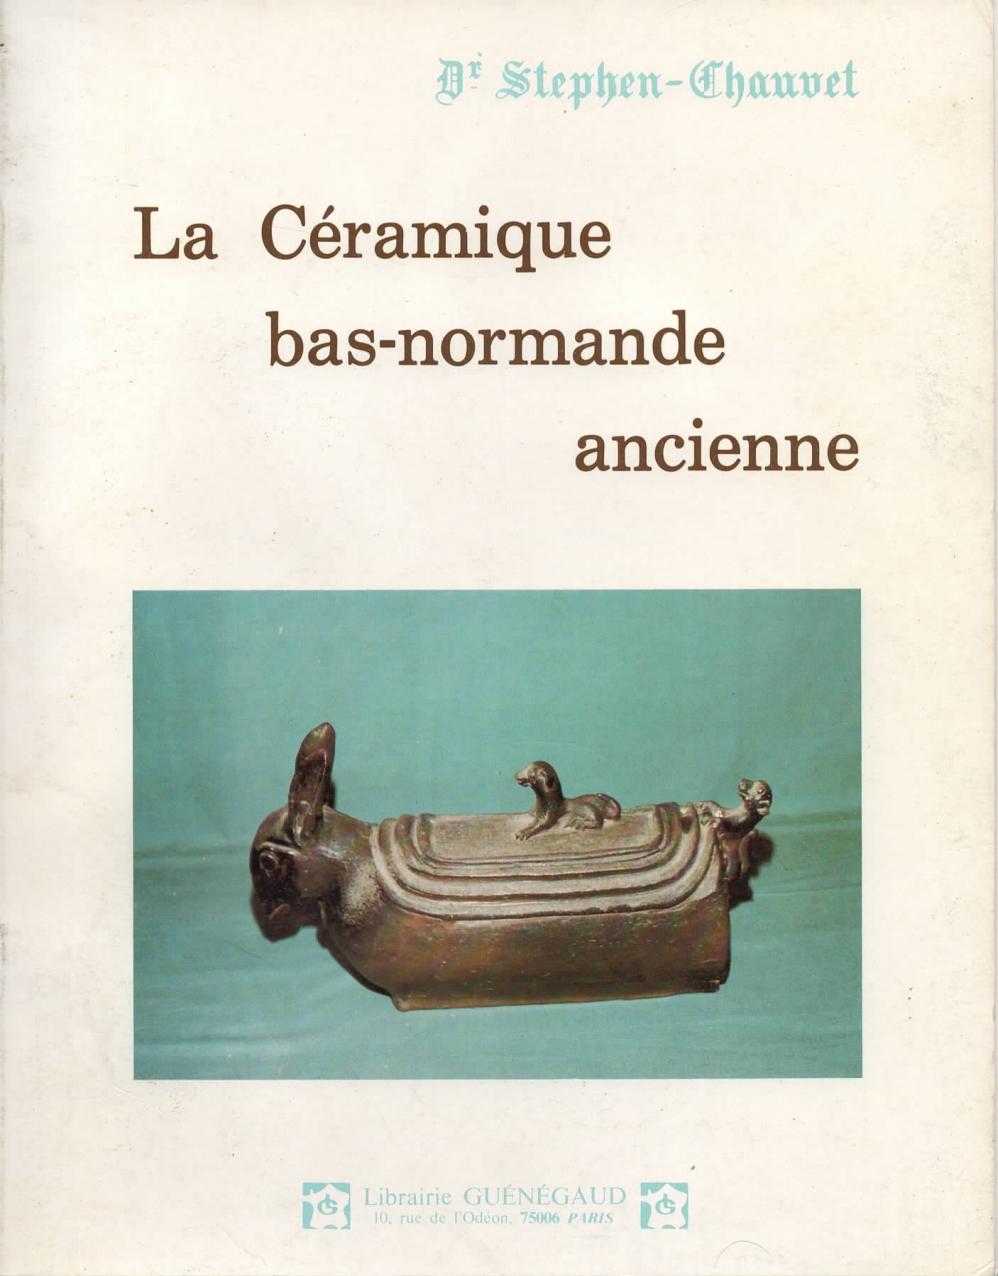 Couverture de la céramique bas-normande ancienne. Édition de 1982.